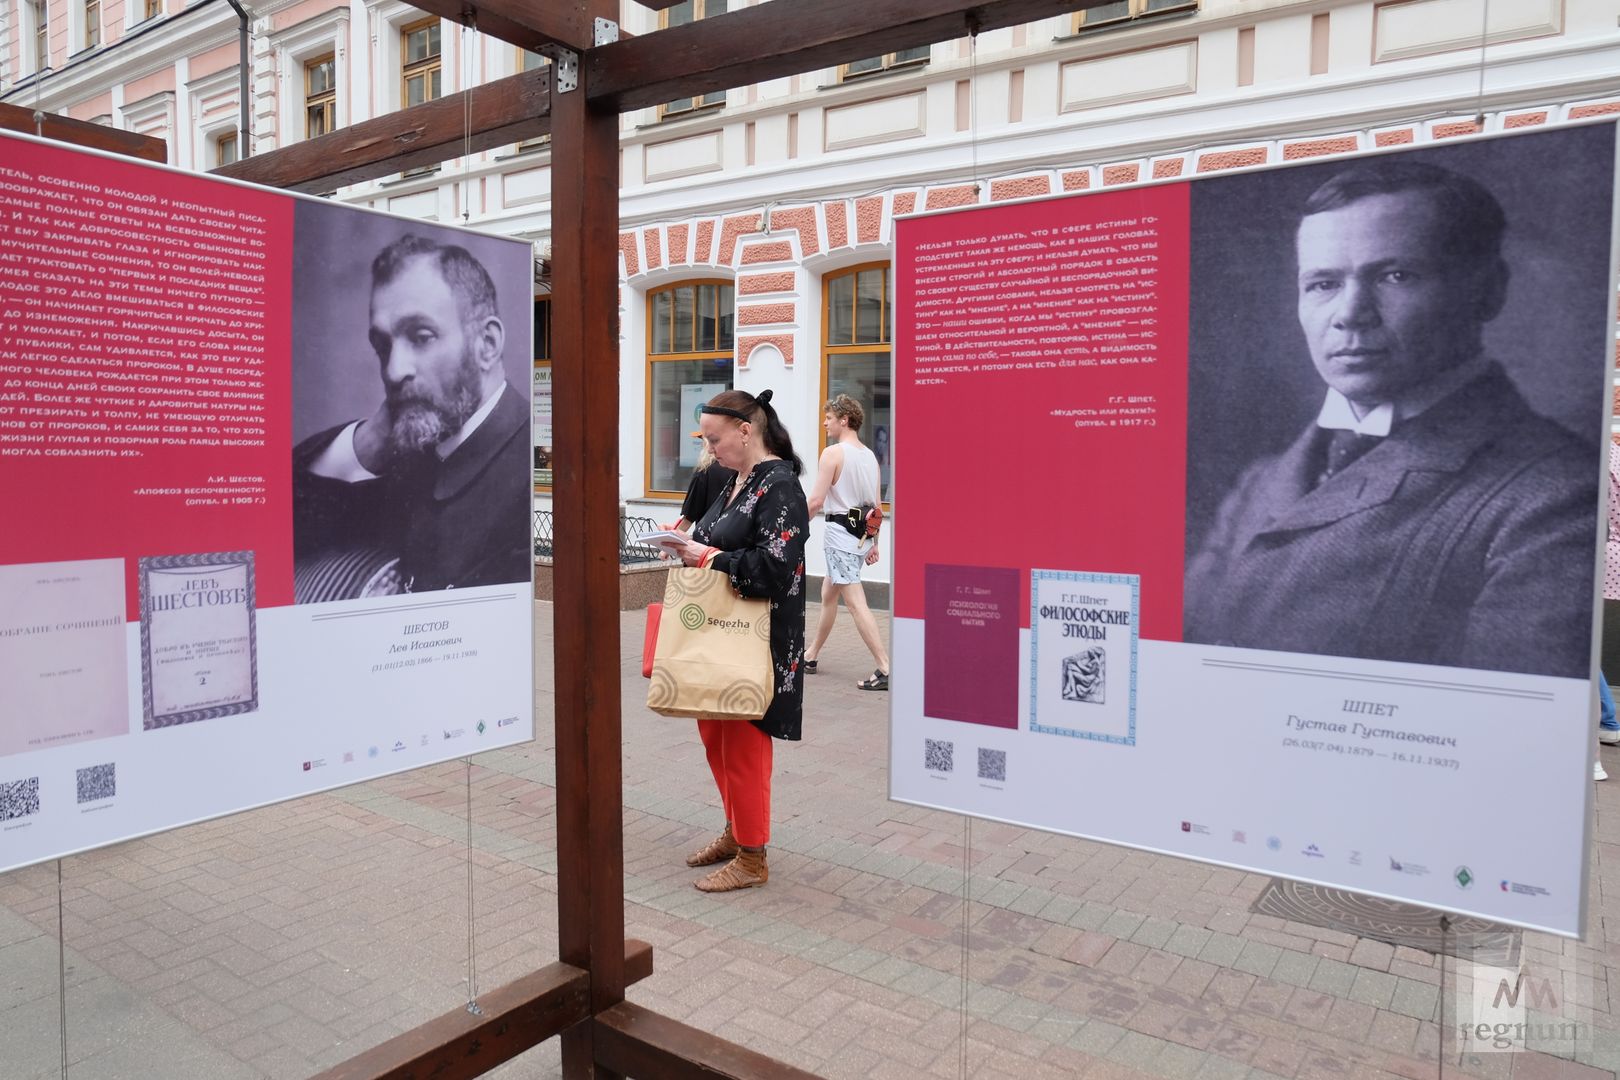 Выставка «Великие философы России» на Арбате